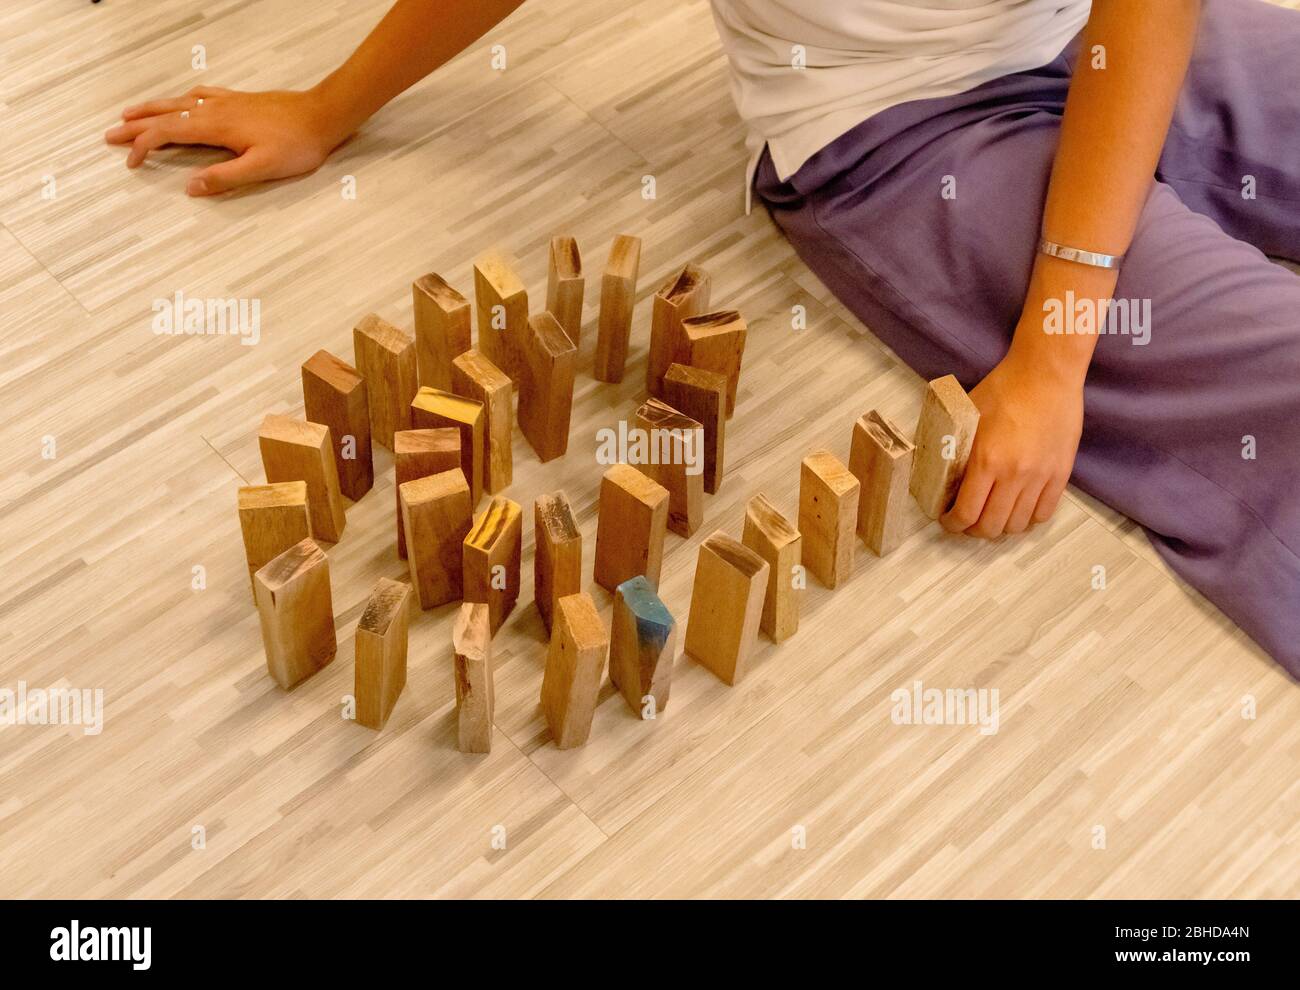 Der Holz-Domino, der von der Hand eines Mannes aufgereiht wird Stockfoto